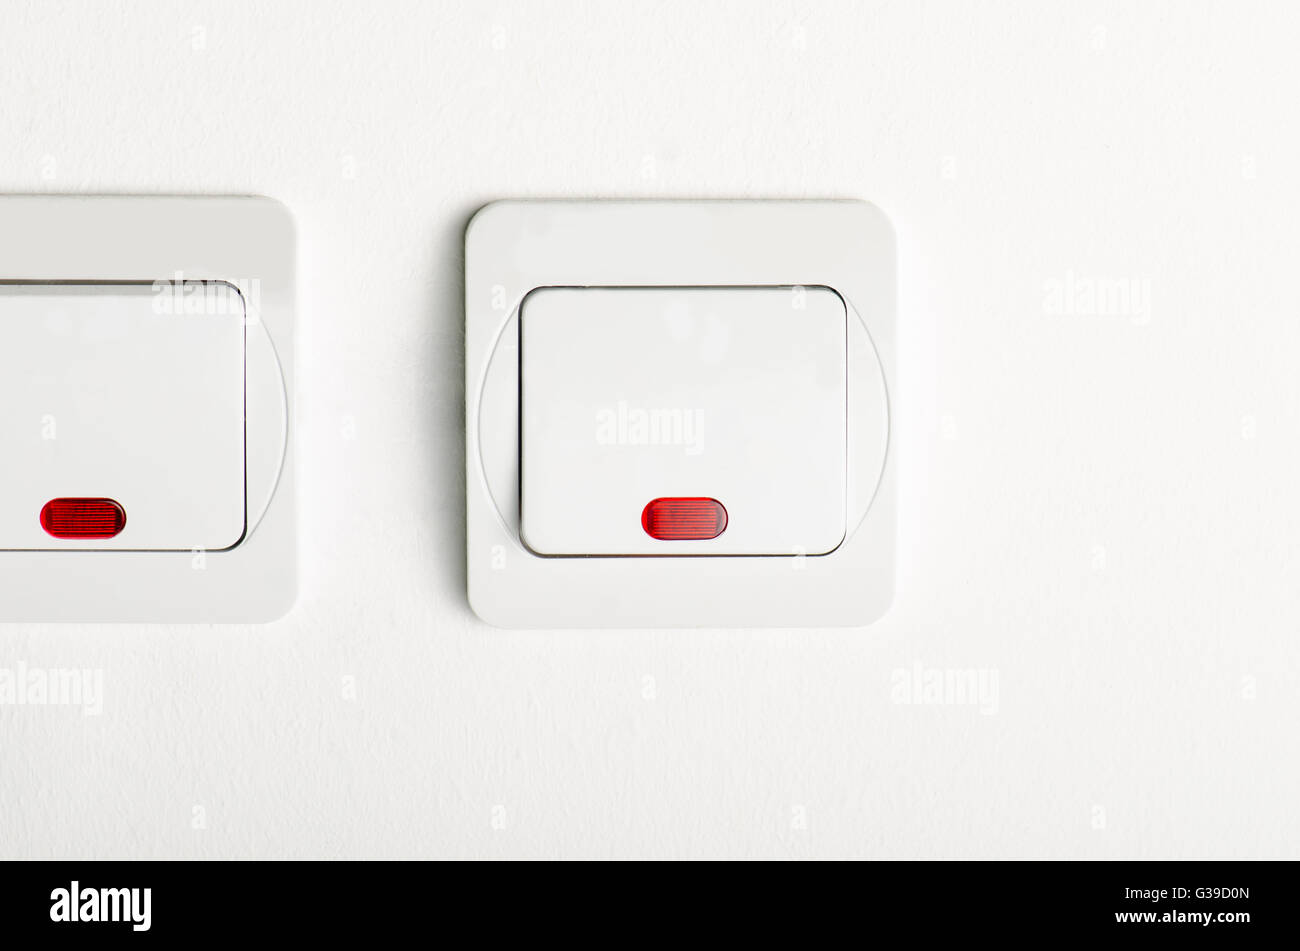 2 Blanco interruptor luminoso de encendido/apagado en la pared blanca con  led rojo Fotografía de stock - Alamy